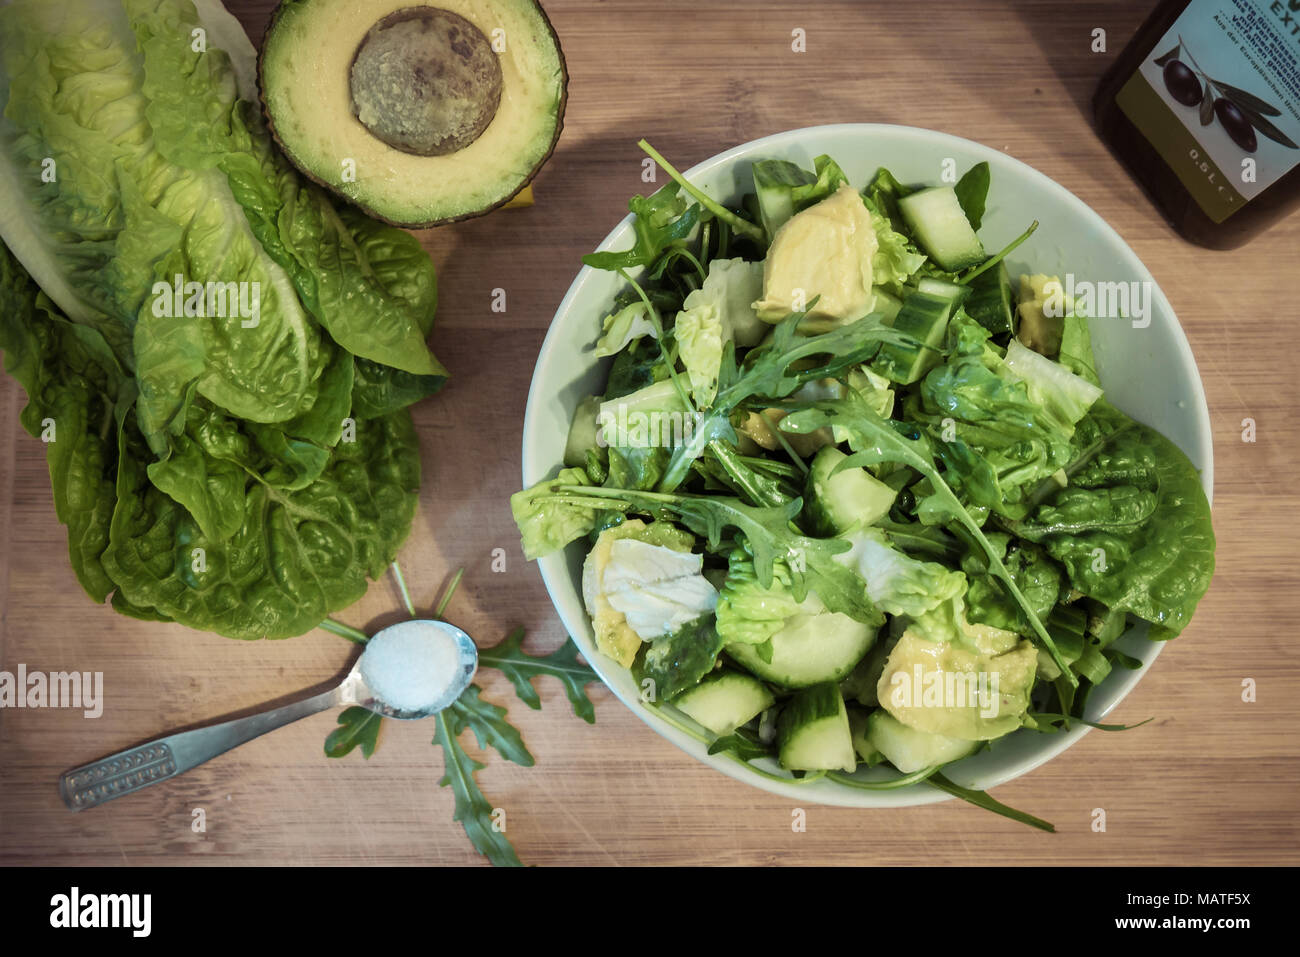 Alimentos saludables: una ensalada verde y los ingredientes (aguacate, sal, aceite de oliva, pepino y ensalada romana) sobre una tabla de madera. (Vista desde arriba) Foto de stock